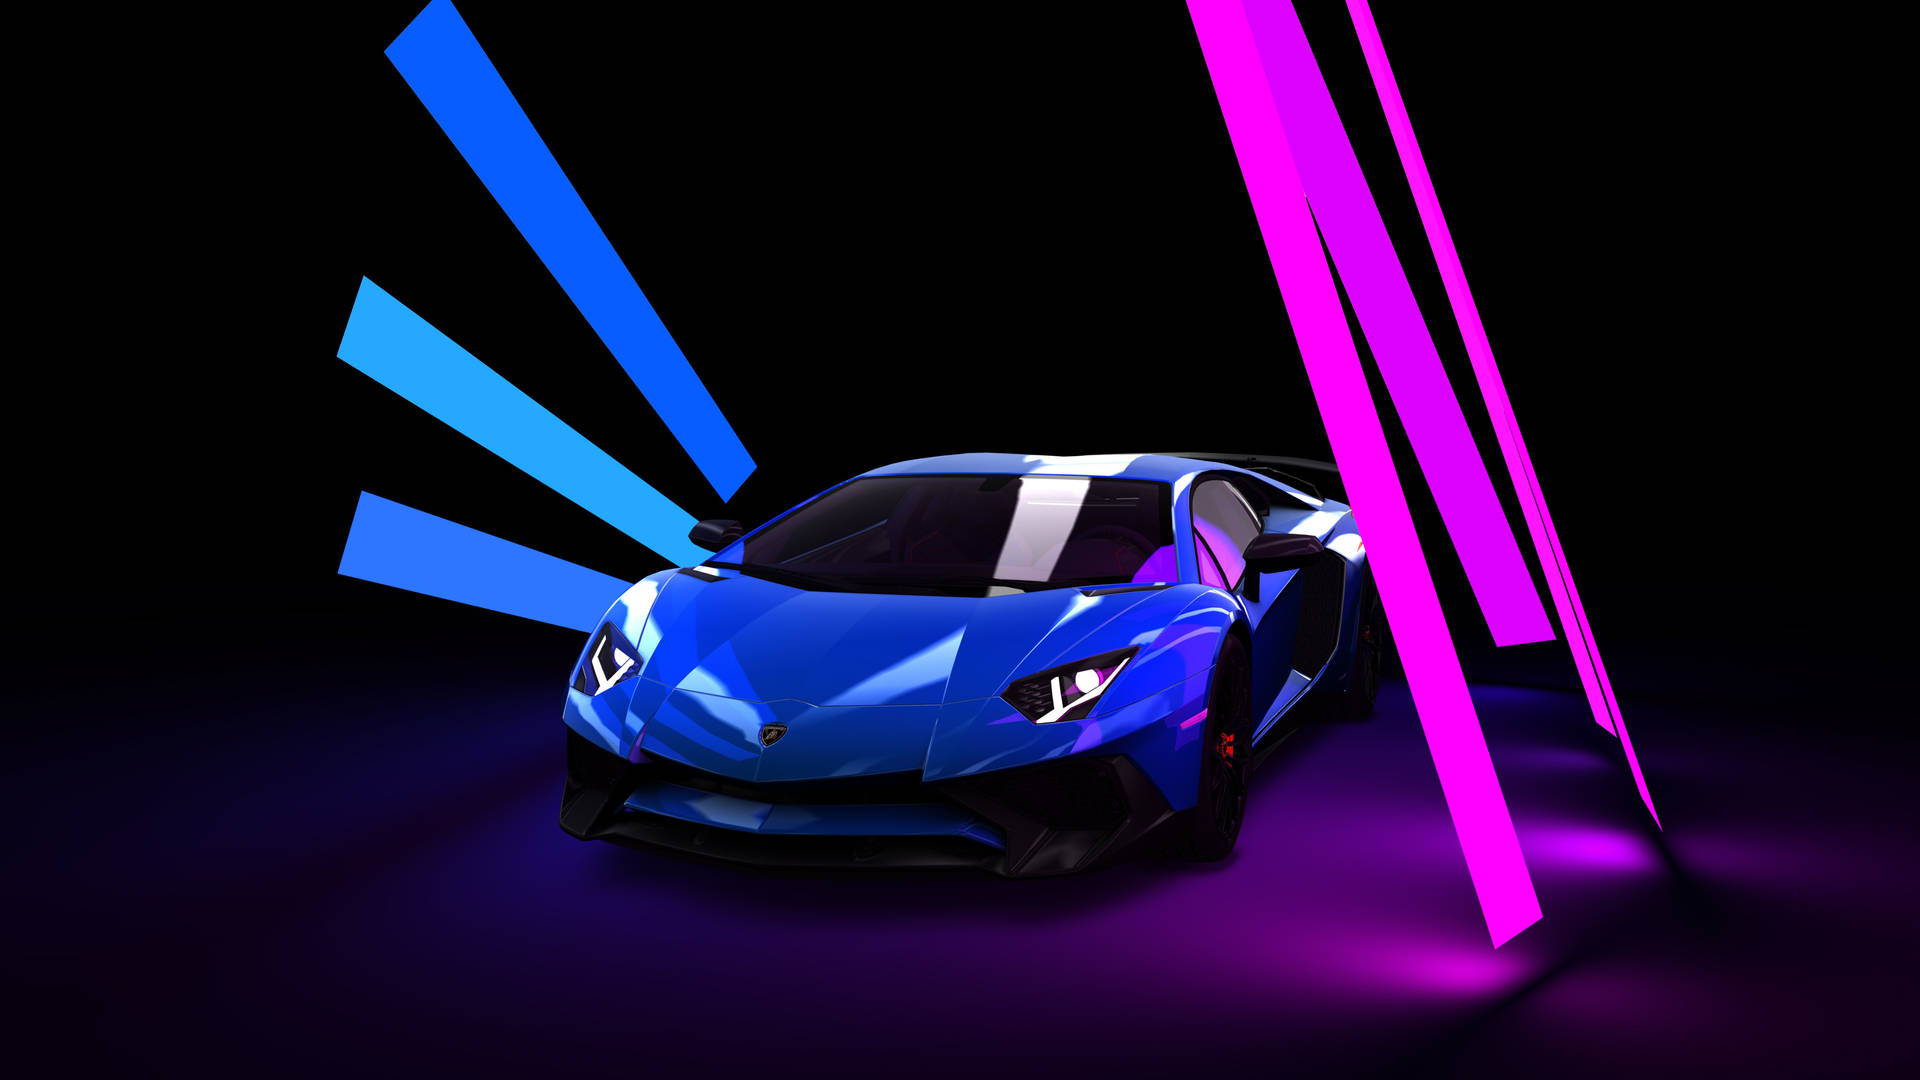 Shiny Lamborghini Blue Sports Car Wallpaper